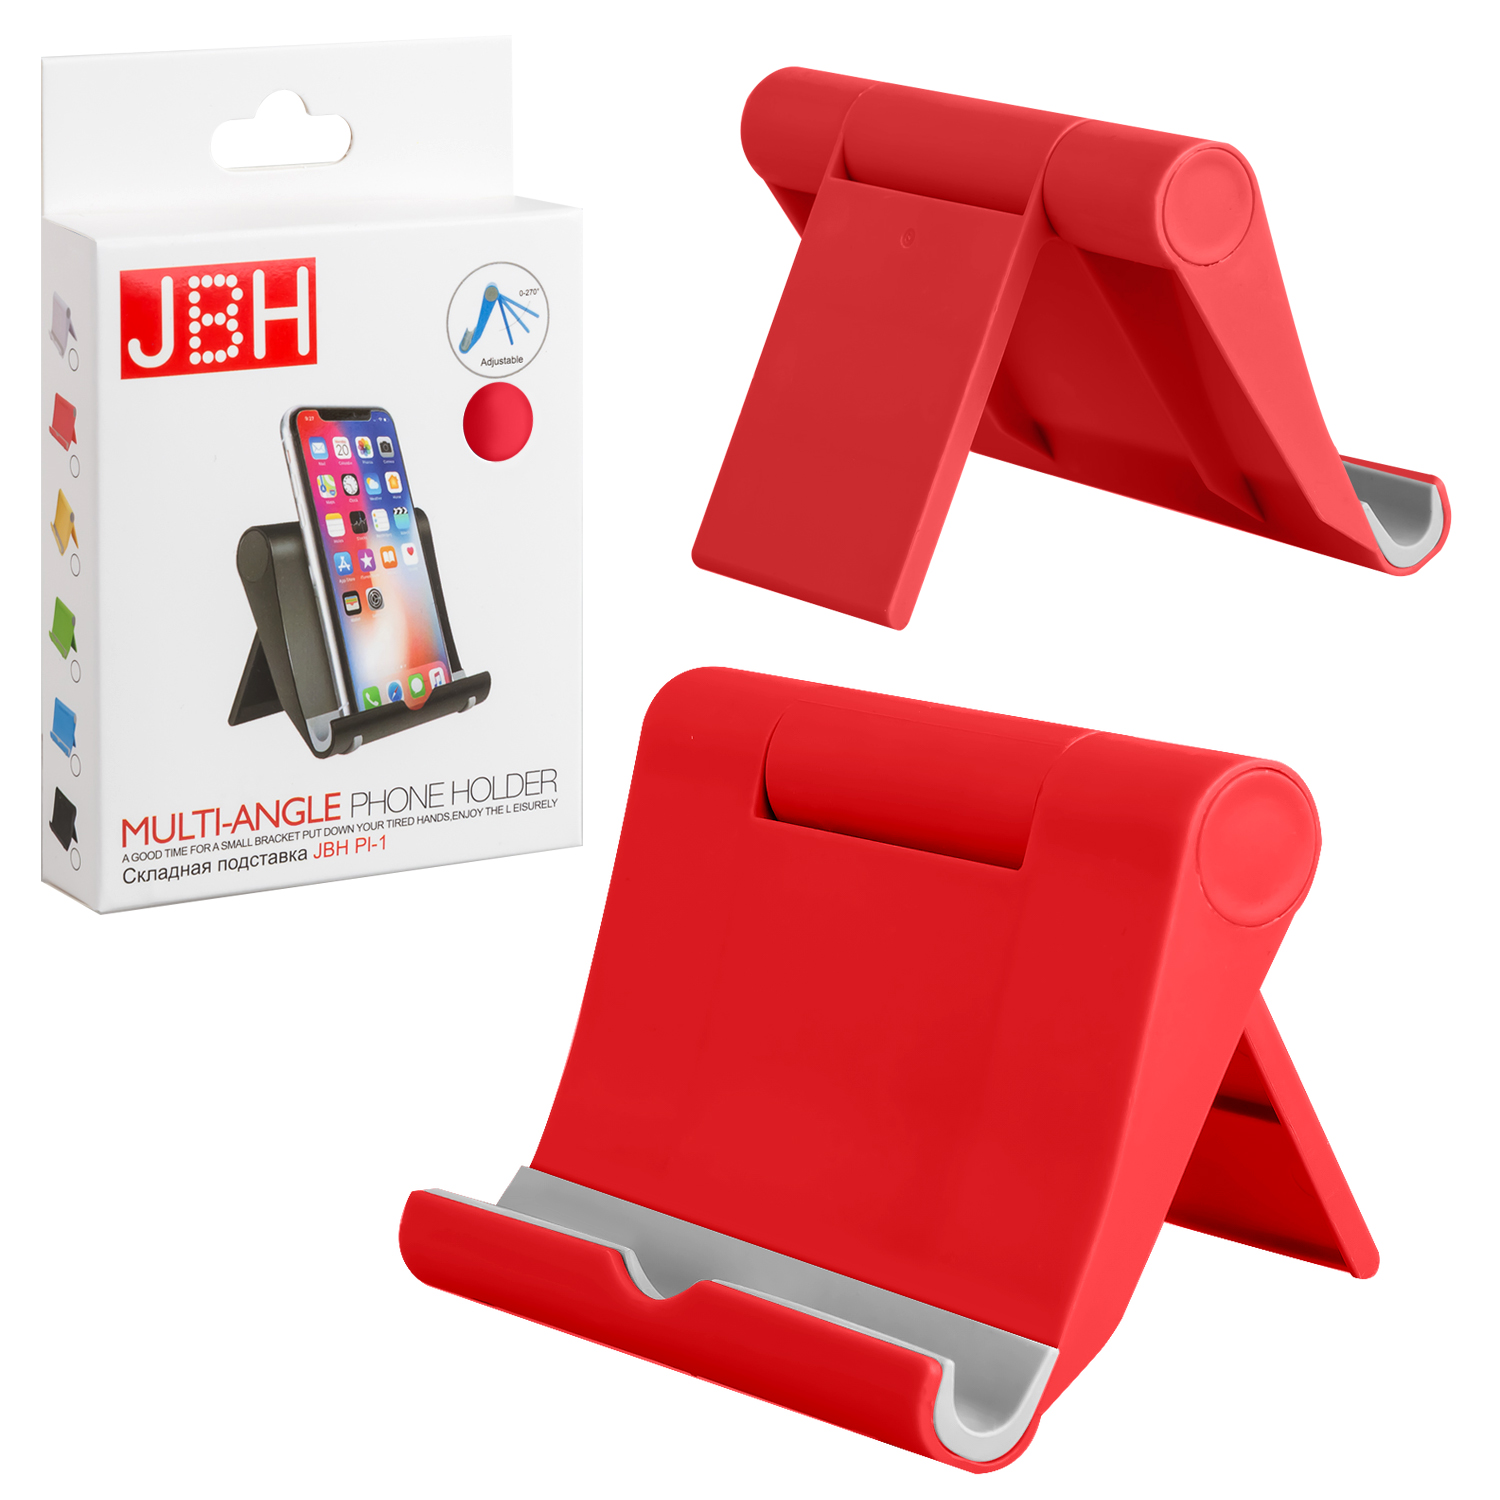 Складная подставка JBH PI-1 красная